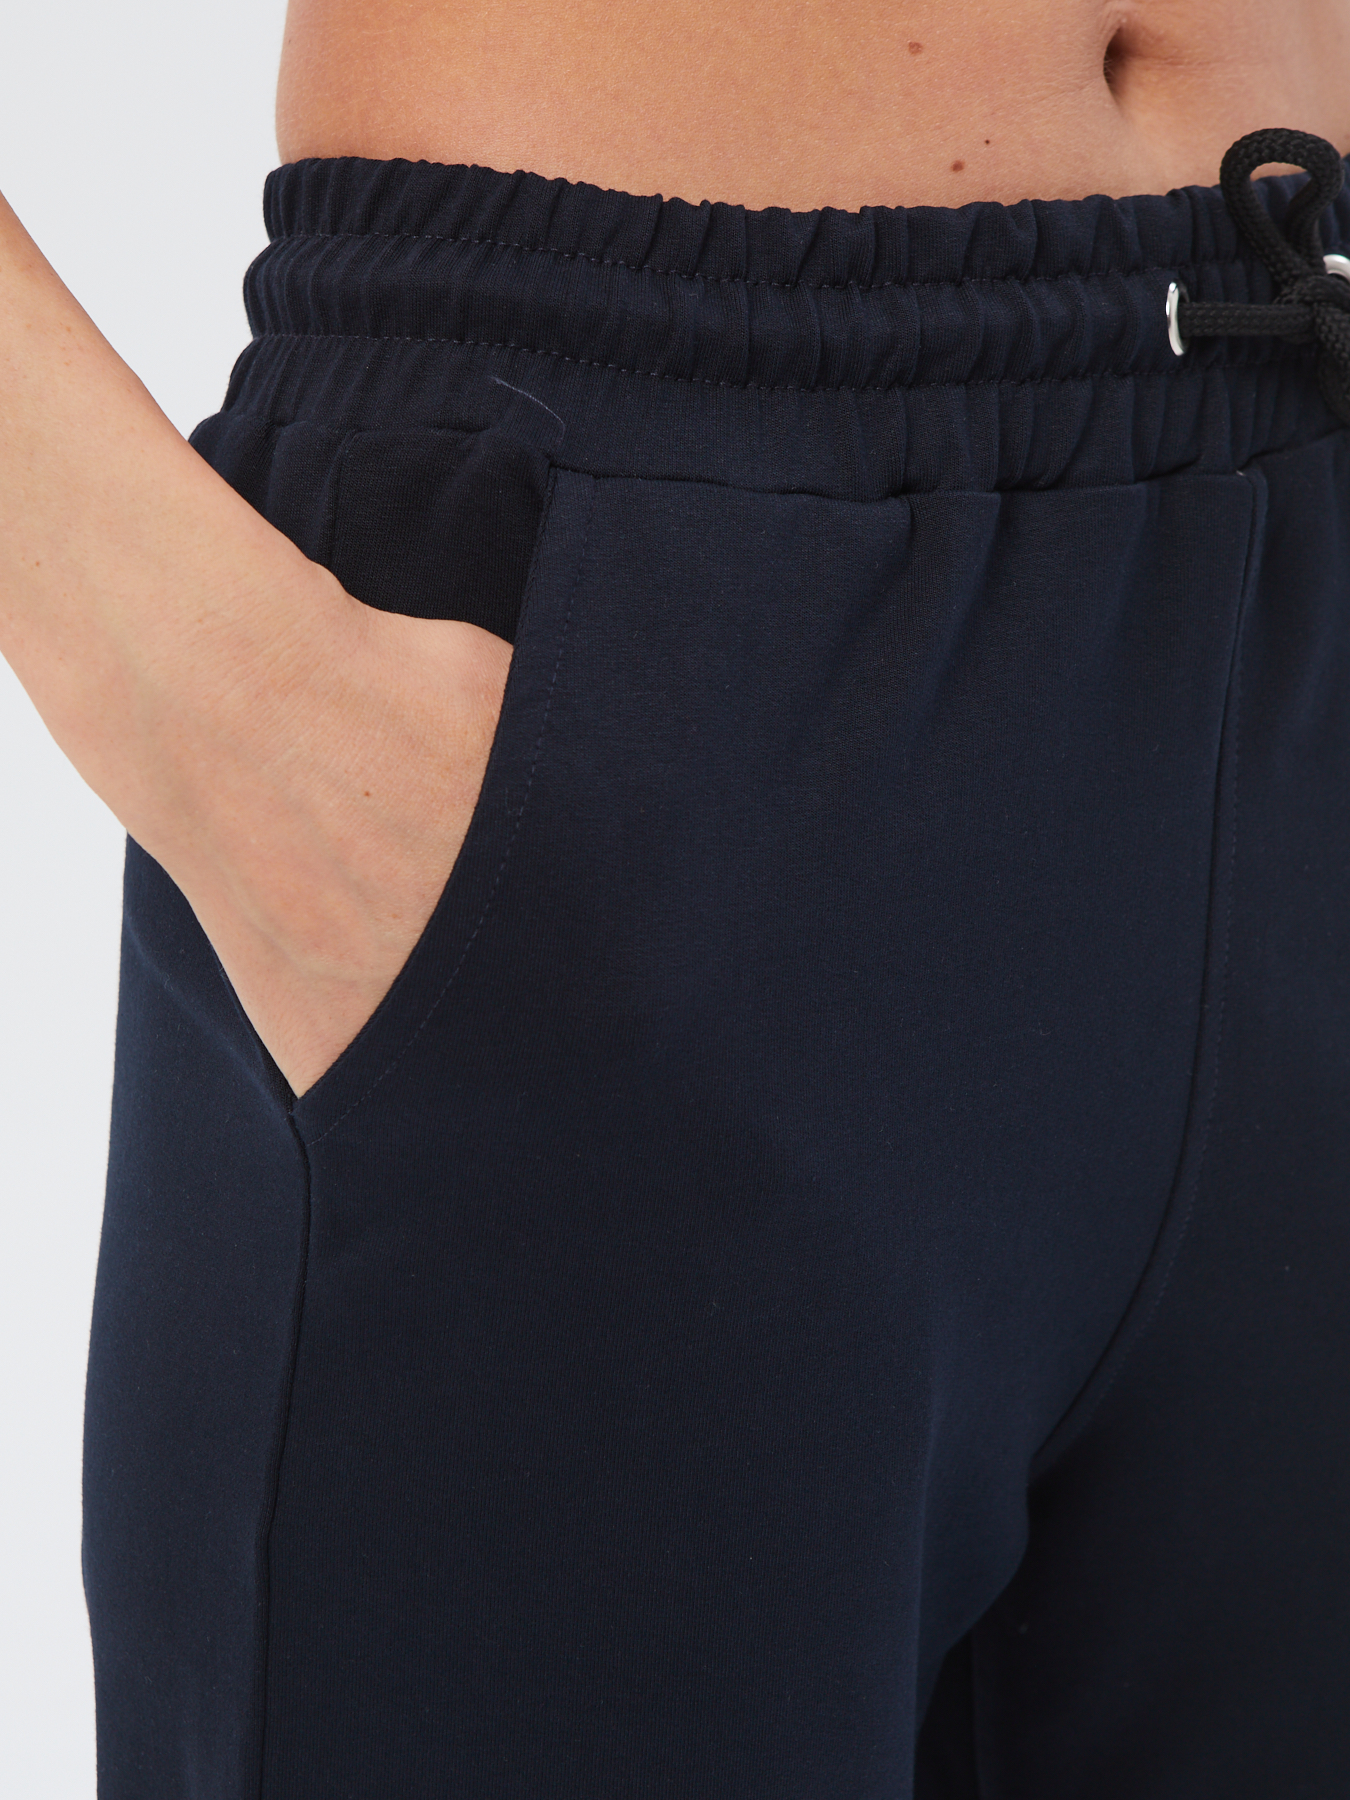 Спортивные брюки женские Still-expert б5 синие 44/150-165